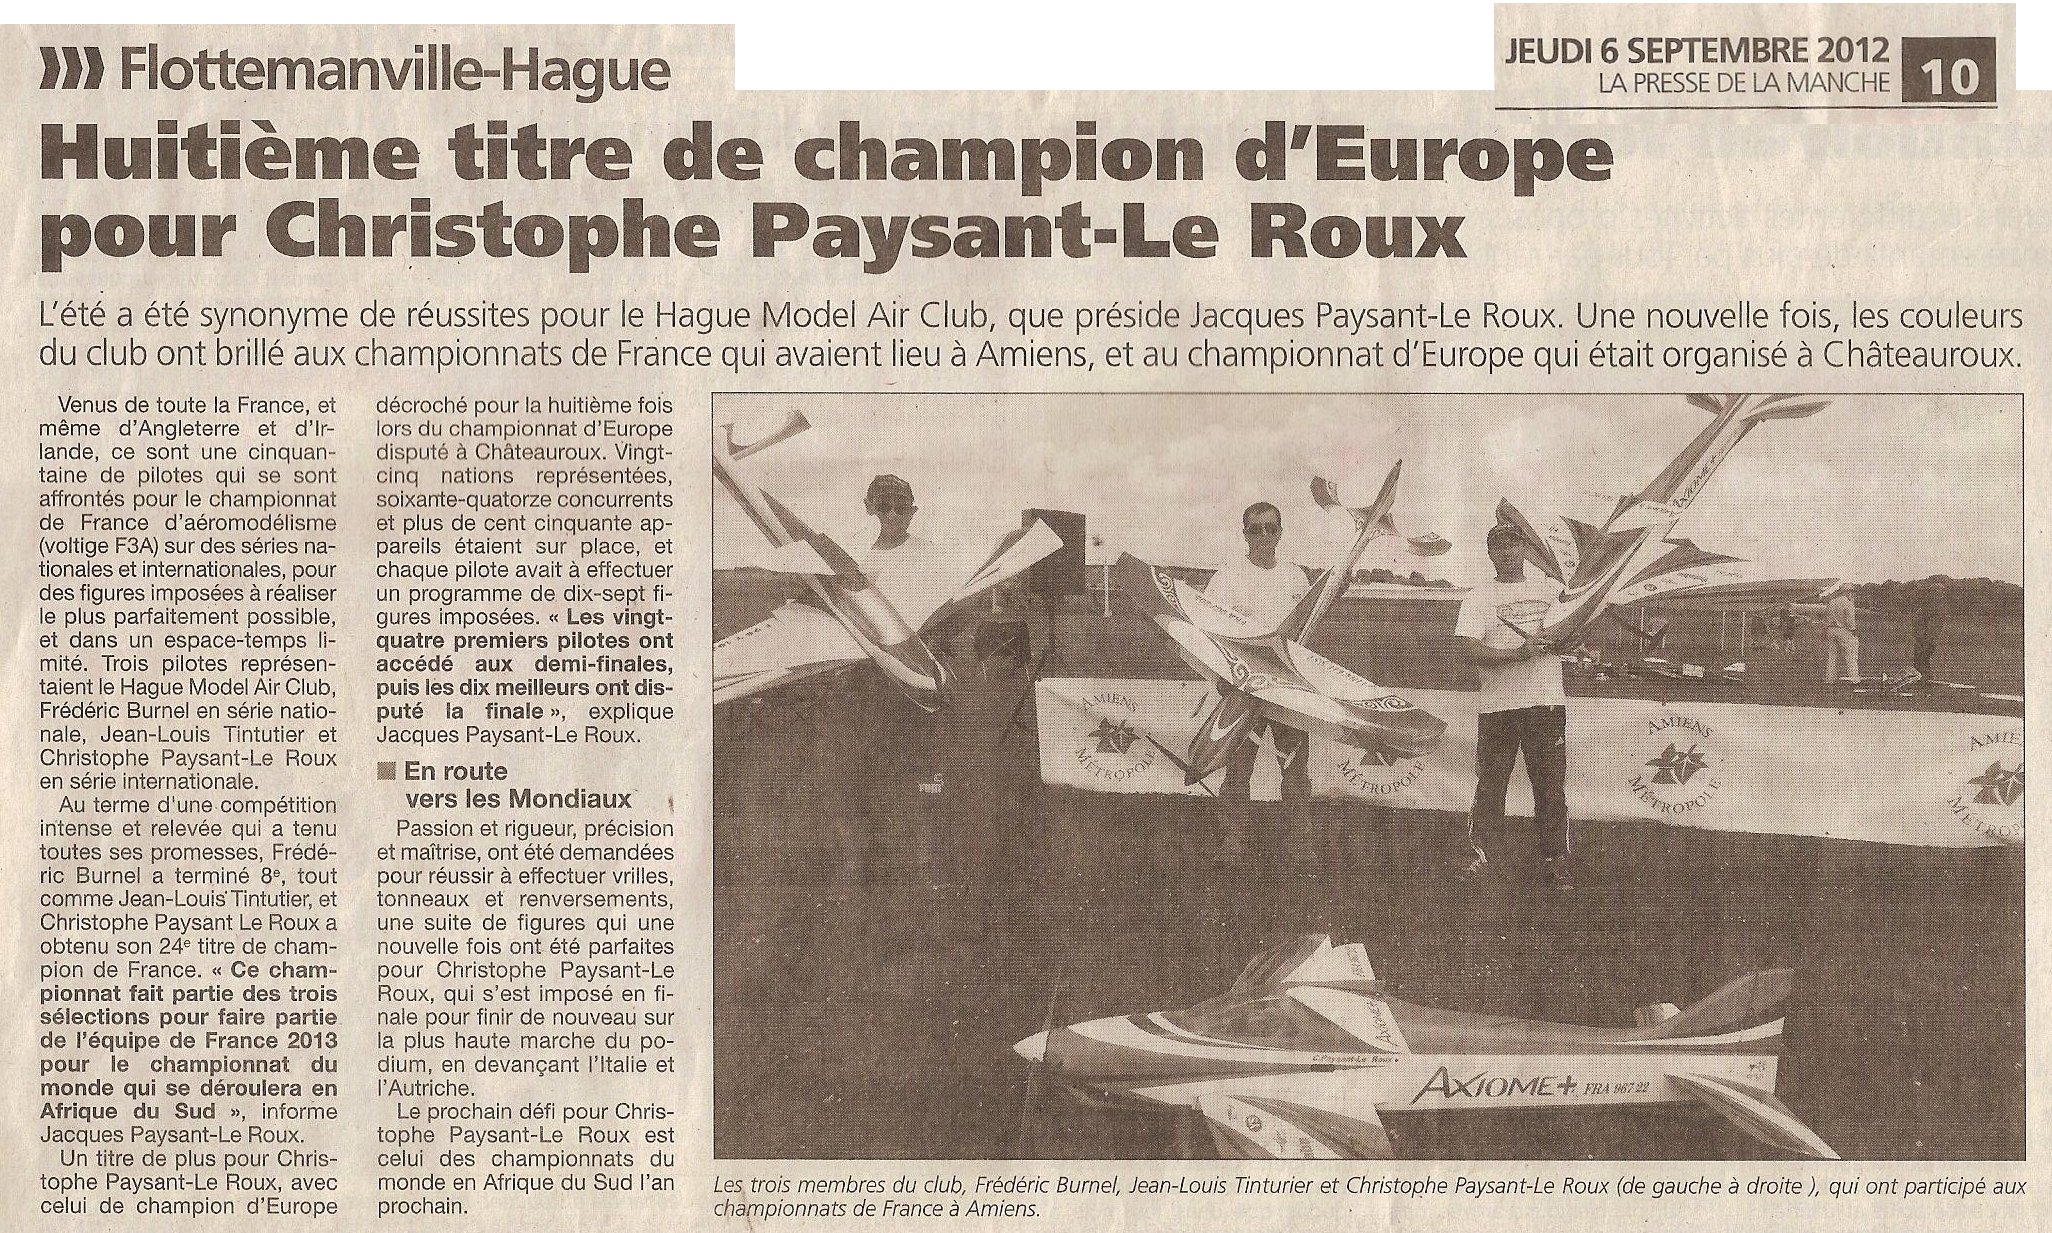 Presse de la Manche 6/09/2012 – Huitième titre de champion d’Europe pour Christophe Paysant-Leroux